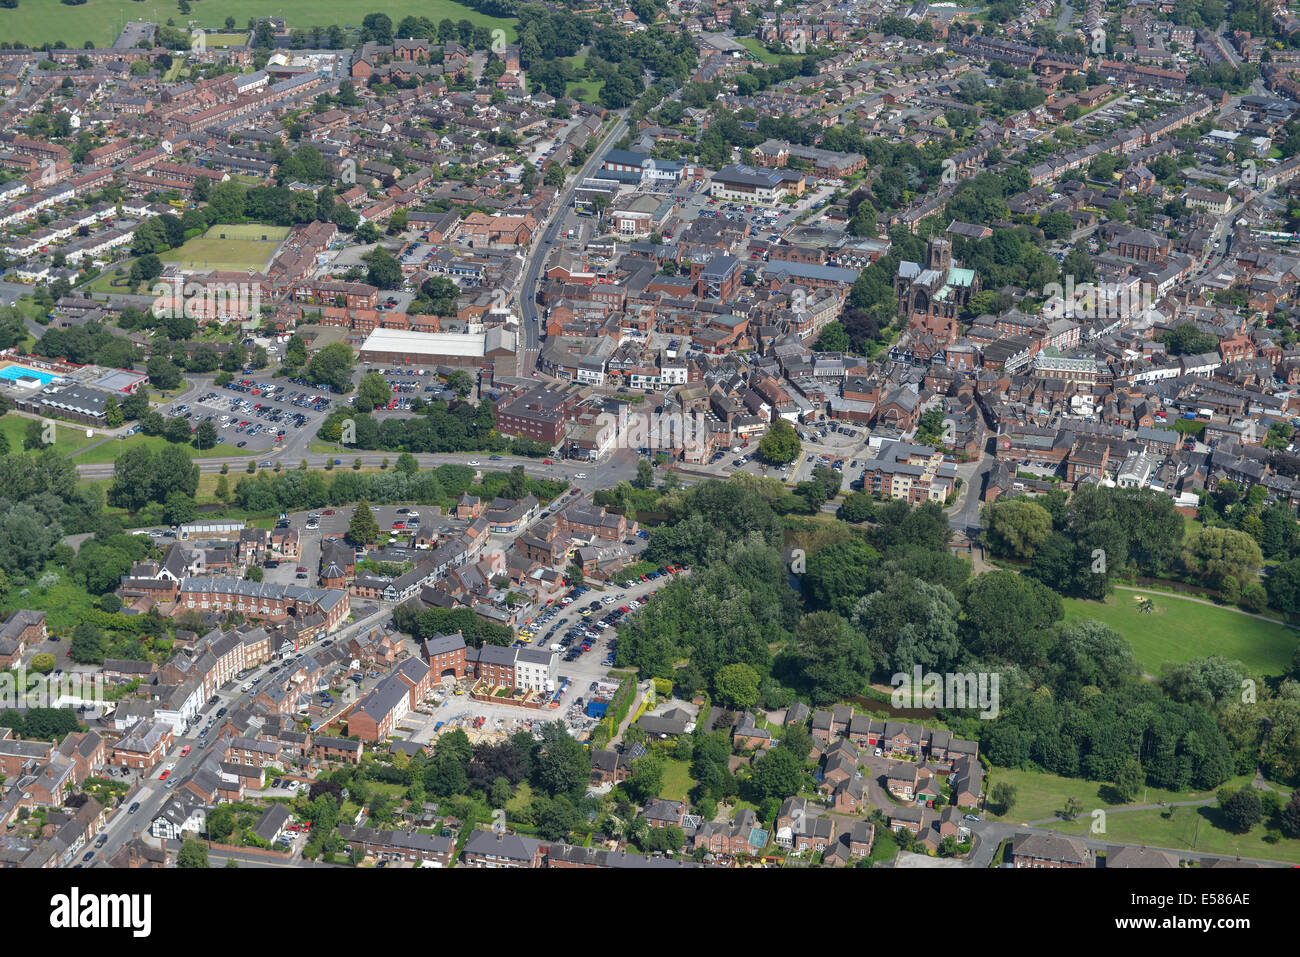 Eine Luftaufnahme zeigt das Stadtzentrum von Nantwich Cheshire, UK Stockfoto